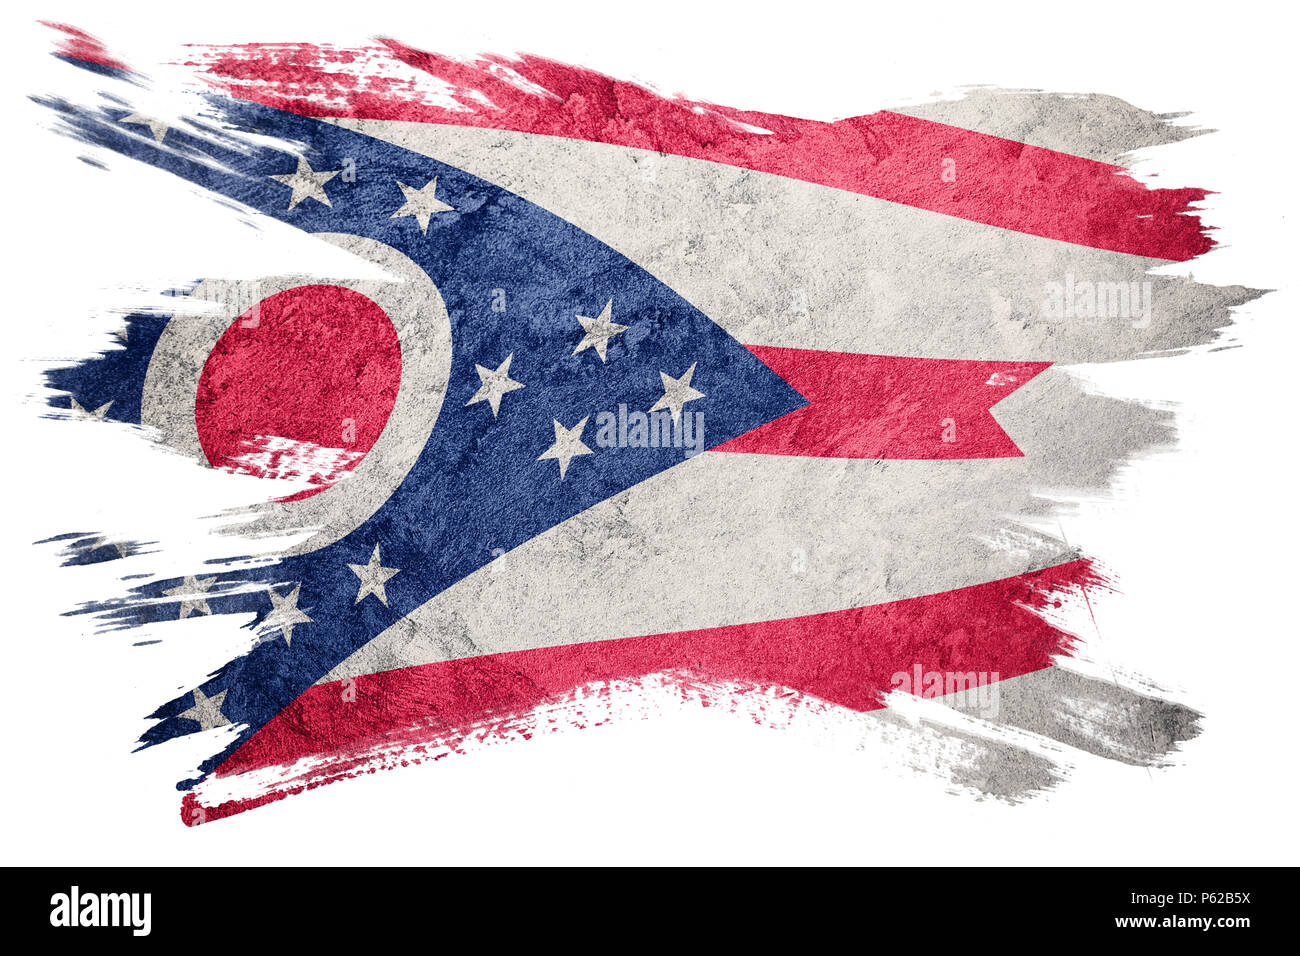 L'état de l'Ohio Grunge flag. Drapeau de l'Ohio coup de pinceau. Banque D'Images